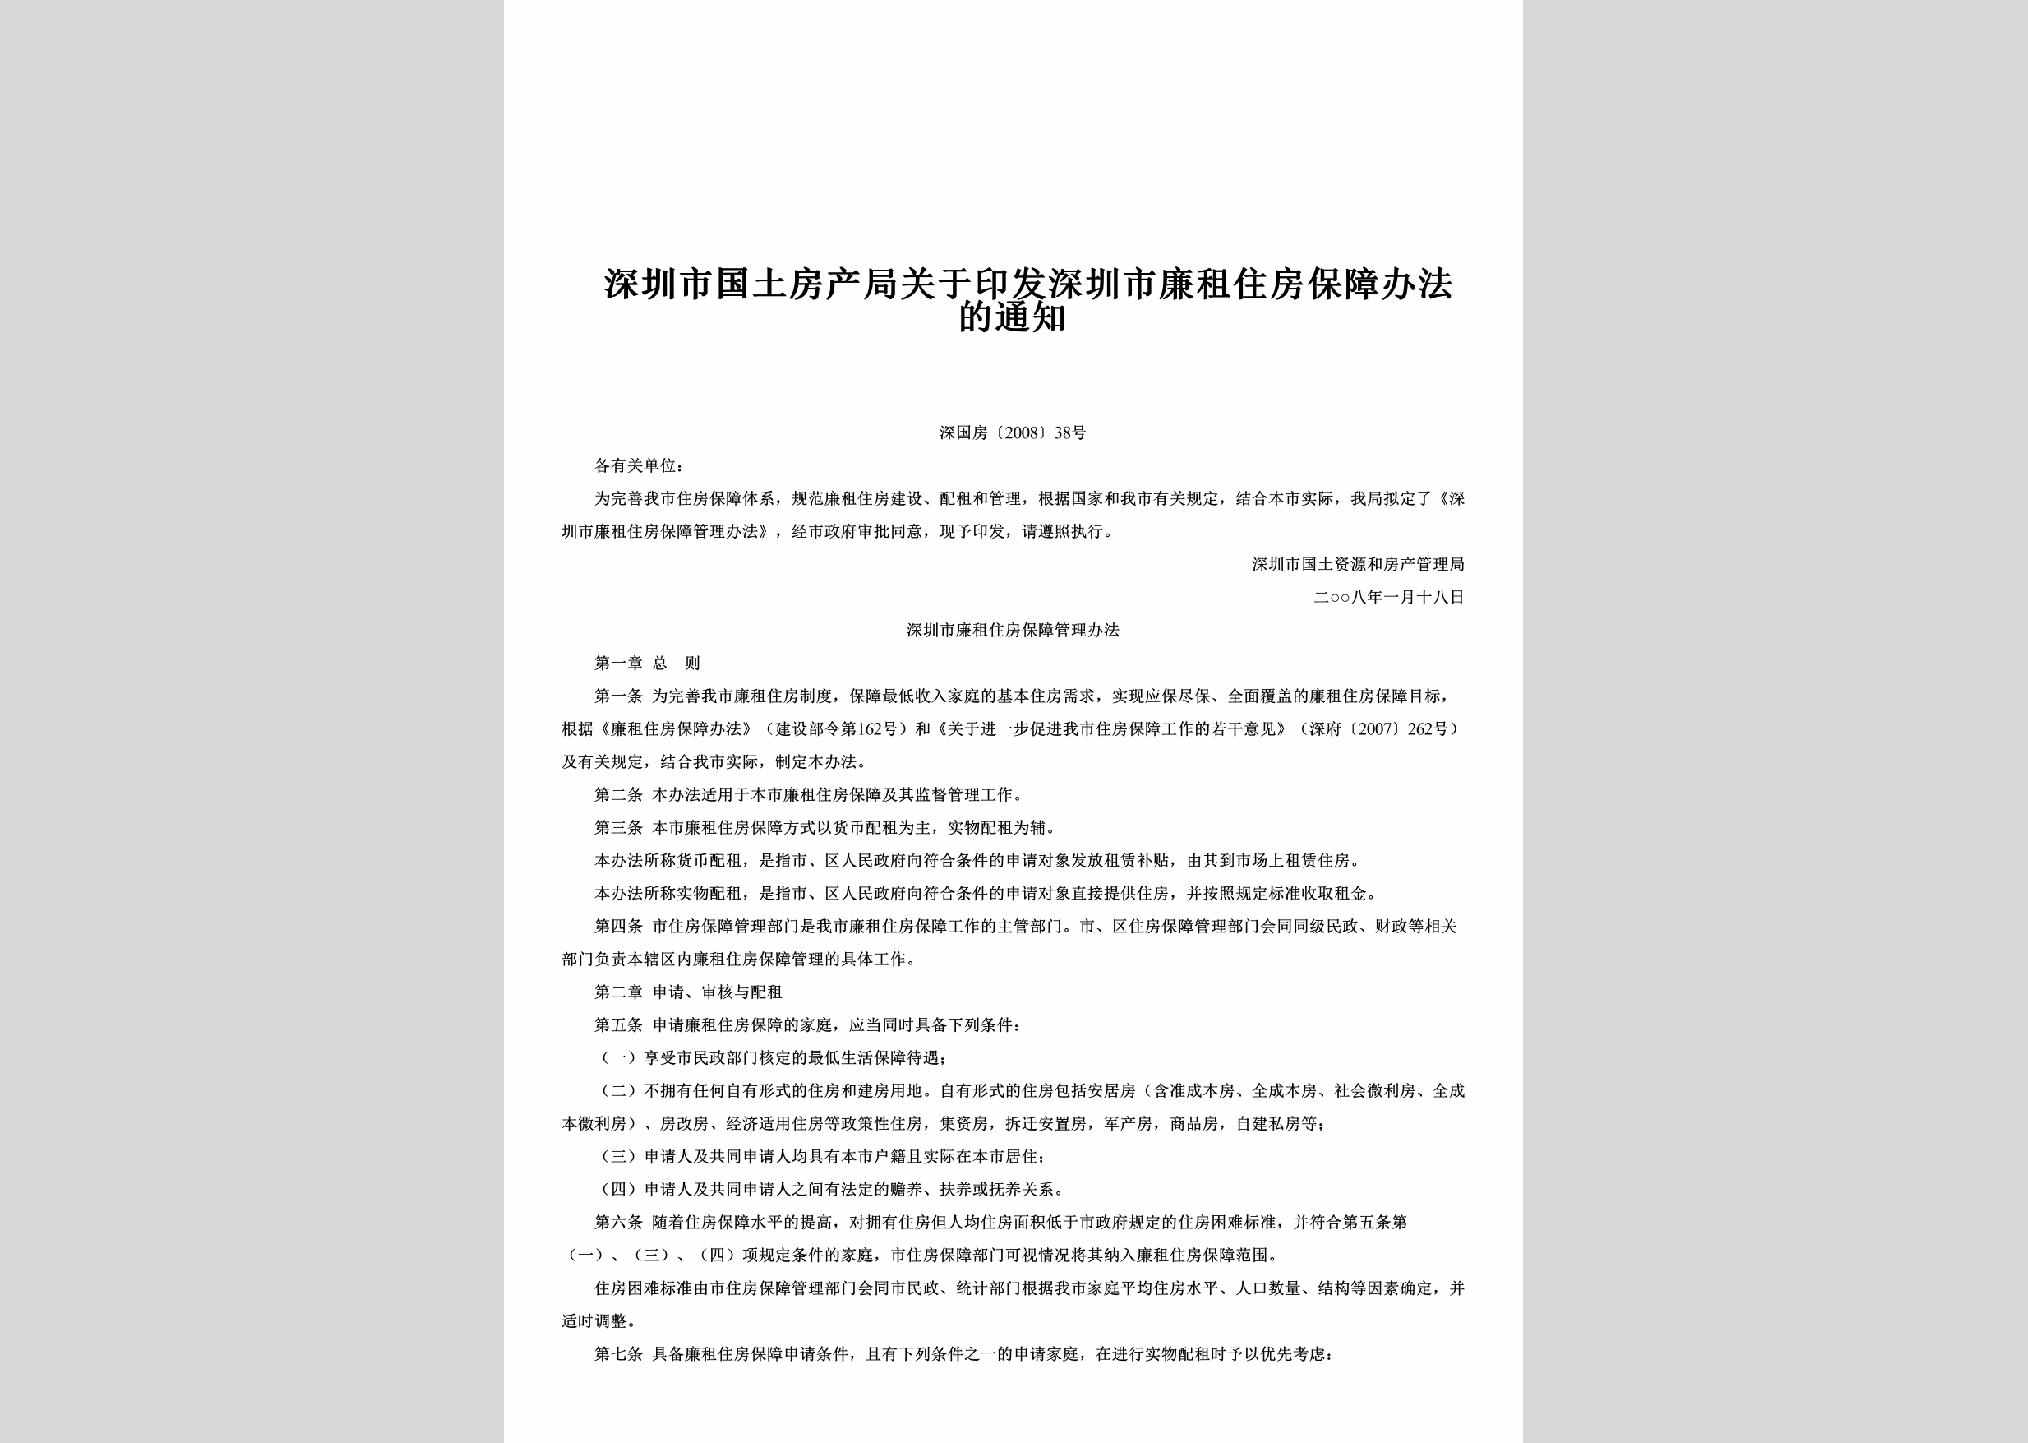 深国房[2008]38号：关于印发深圳市廉租住房保障办法的通知